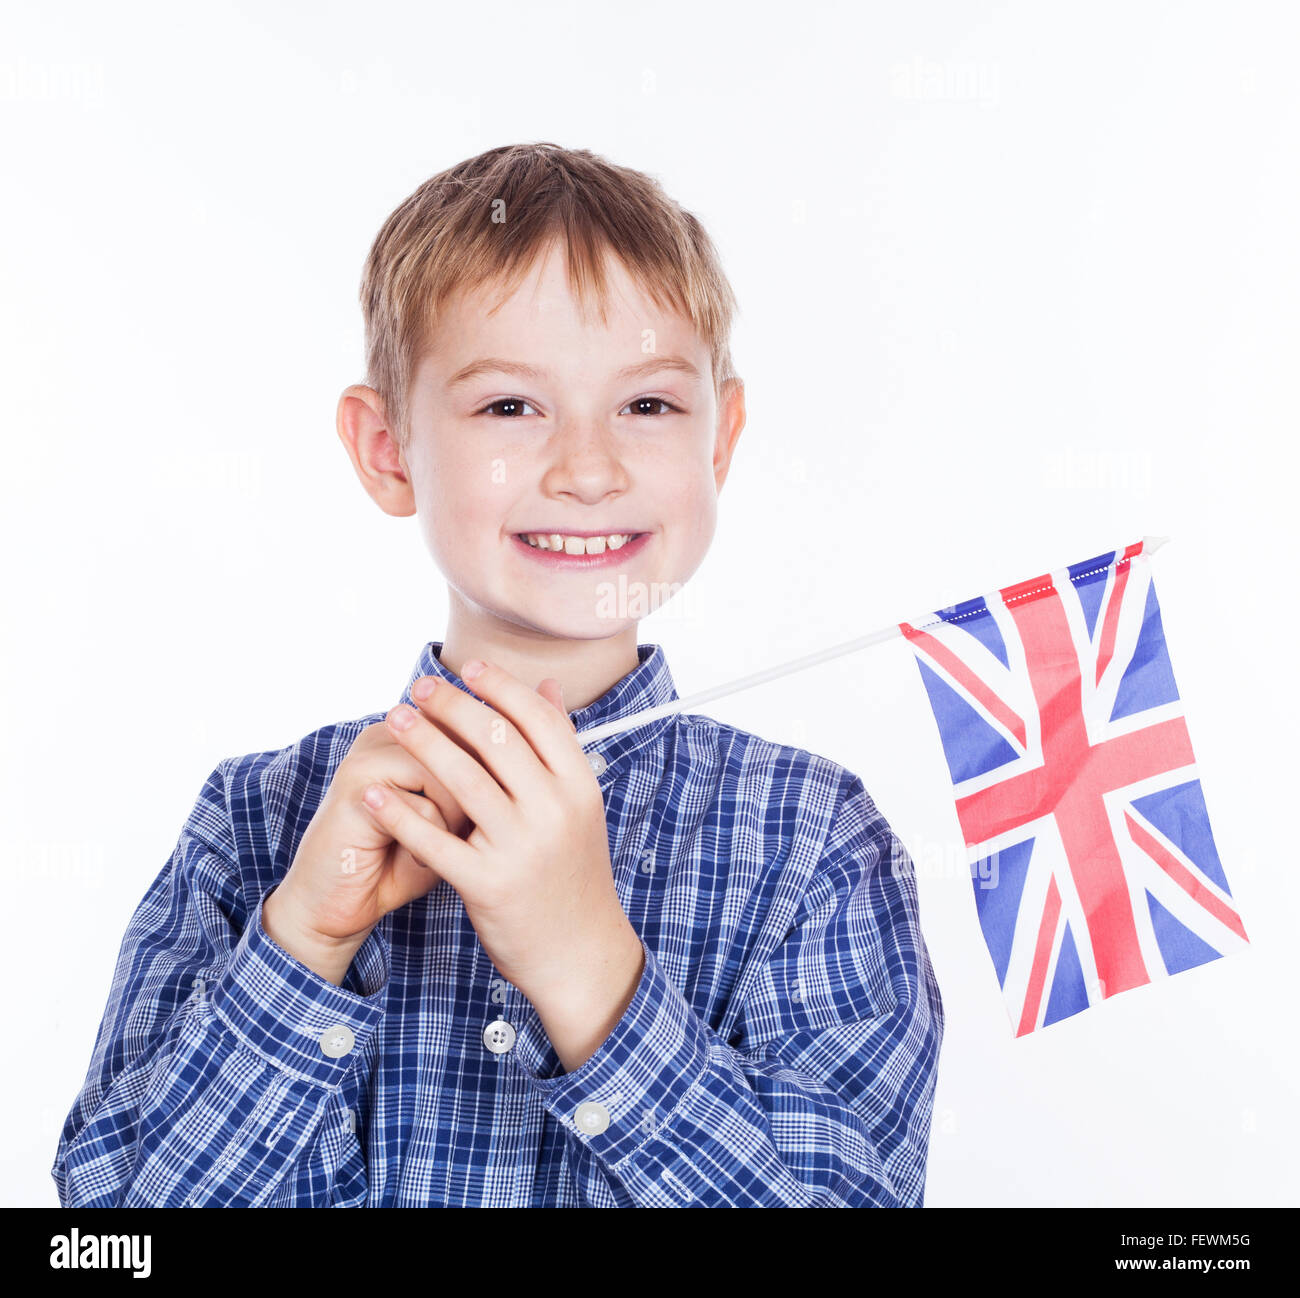 little-boy-with-english-flag-FEWM5G.jpg